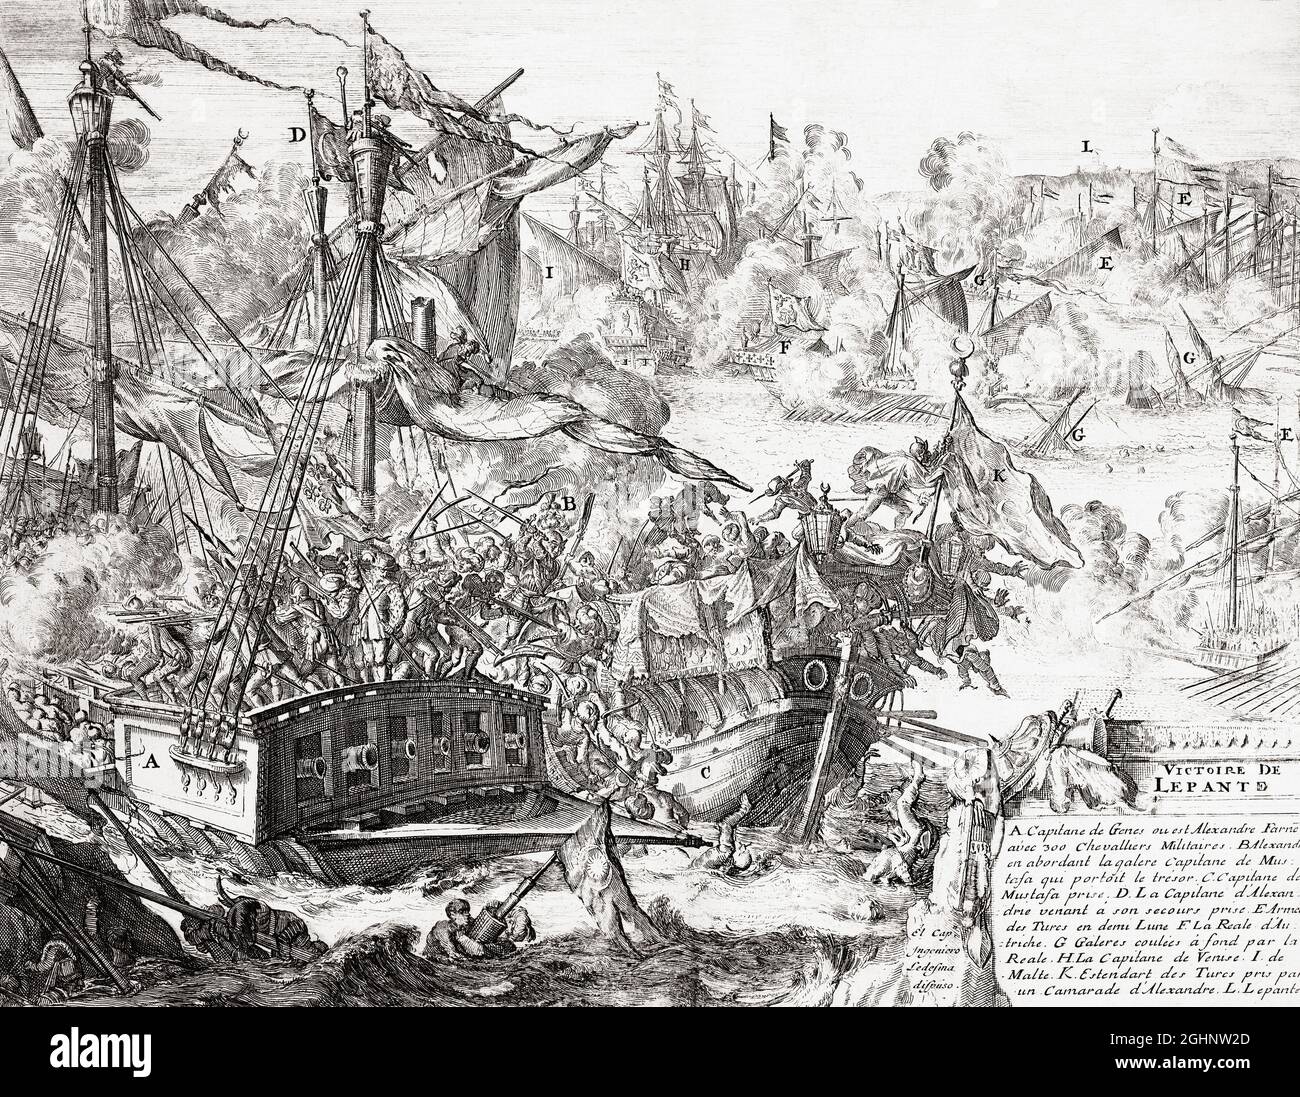 La bataille de Lepanto, le 7 octobre 1571, lorsque la flotte de la Sainte Ligue, une coalition d'Etats catholiques, a vaincu de manière décisive la flotte de l'Empire ottoman. Après un travail de la fin du XVIIe siècle. Banque D'Images